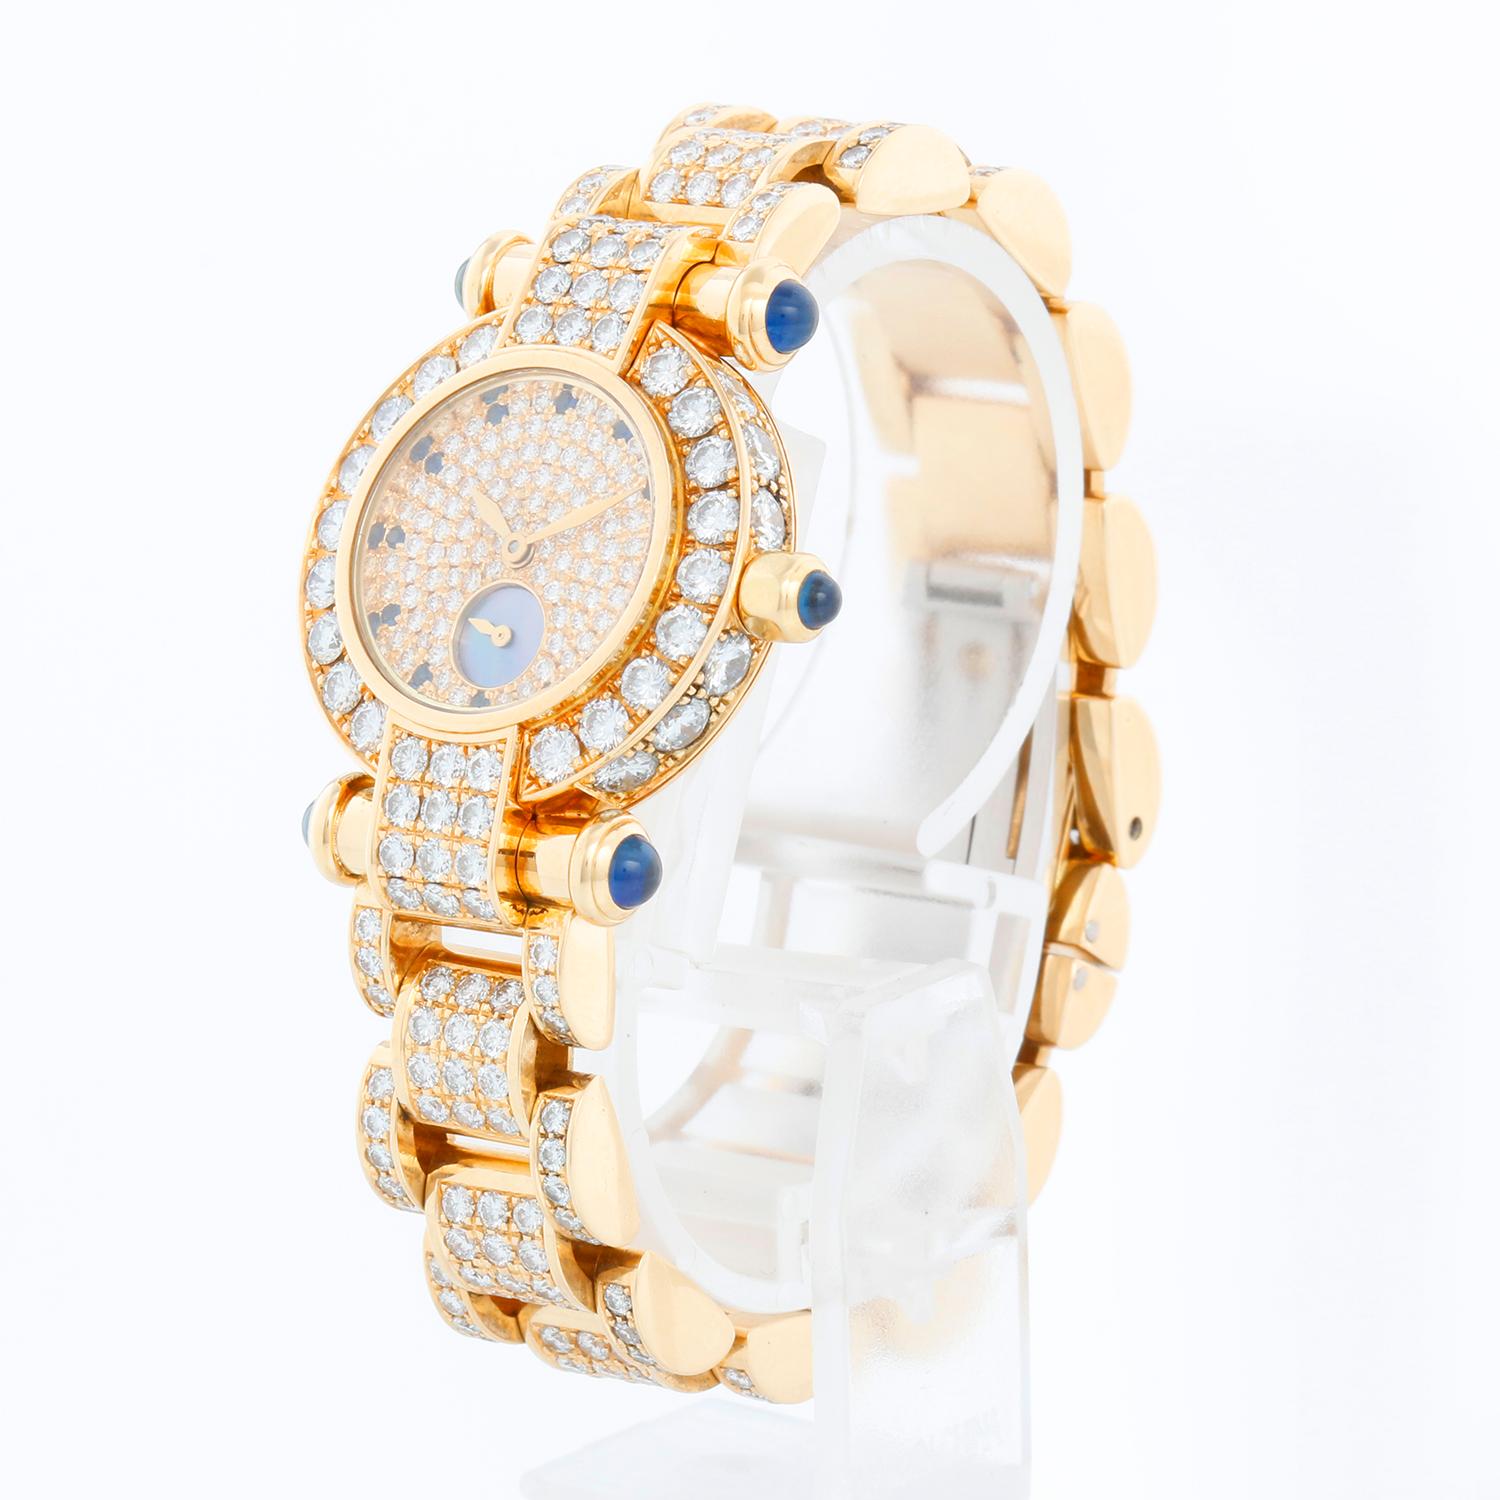 Montre femme Chopard Imperiale en or jaune 18 carats 39/3368-23 - Quartz. Boîtier en or jaune 18 carats avec lunette et cornes diamantées (32 mm de diamètre). Cadran en diamants pavés avec sous-cadran en nacre de Tahiti et index en saphir. Bracelet